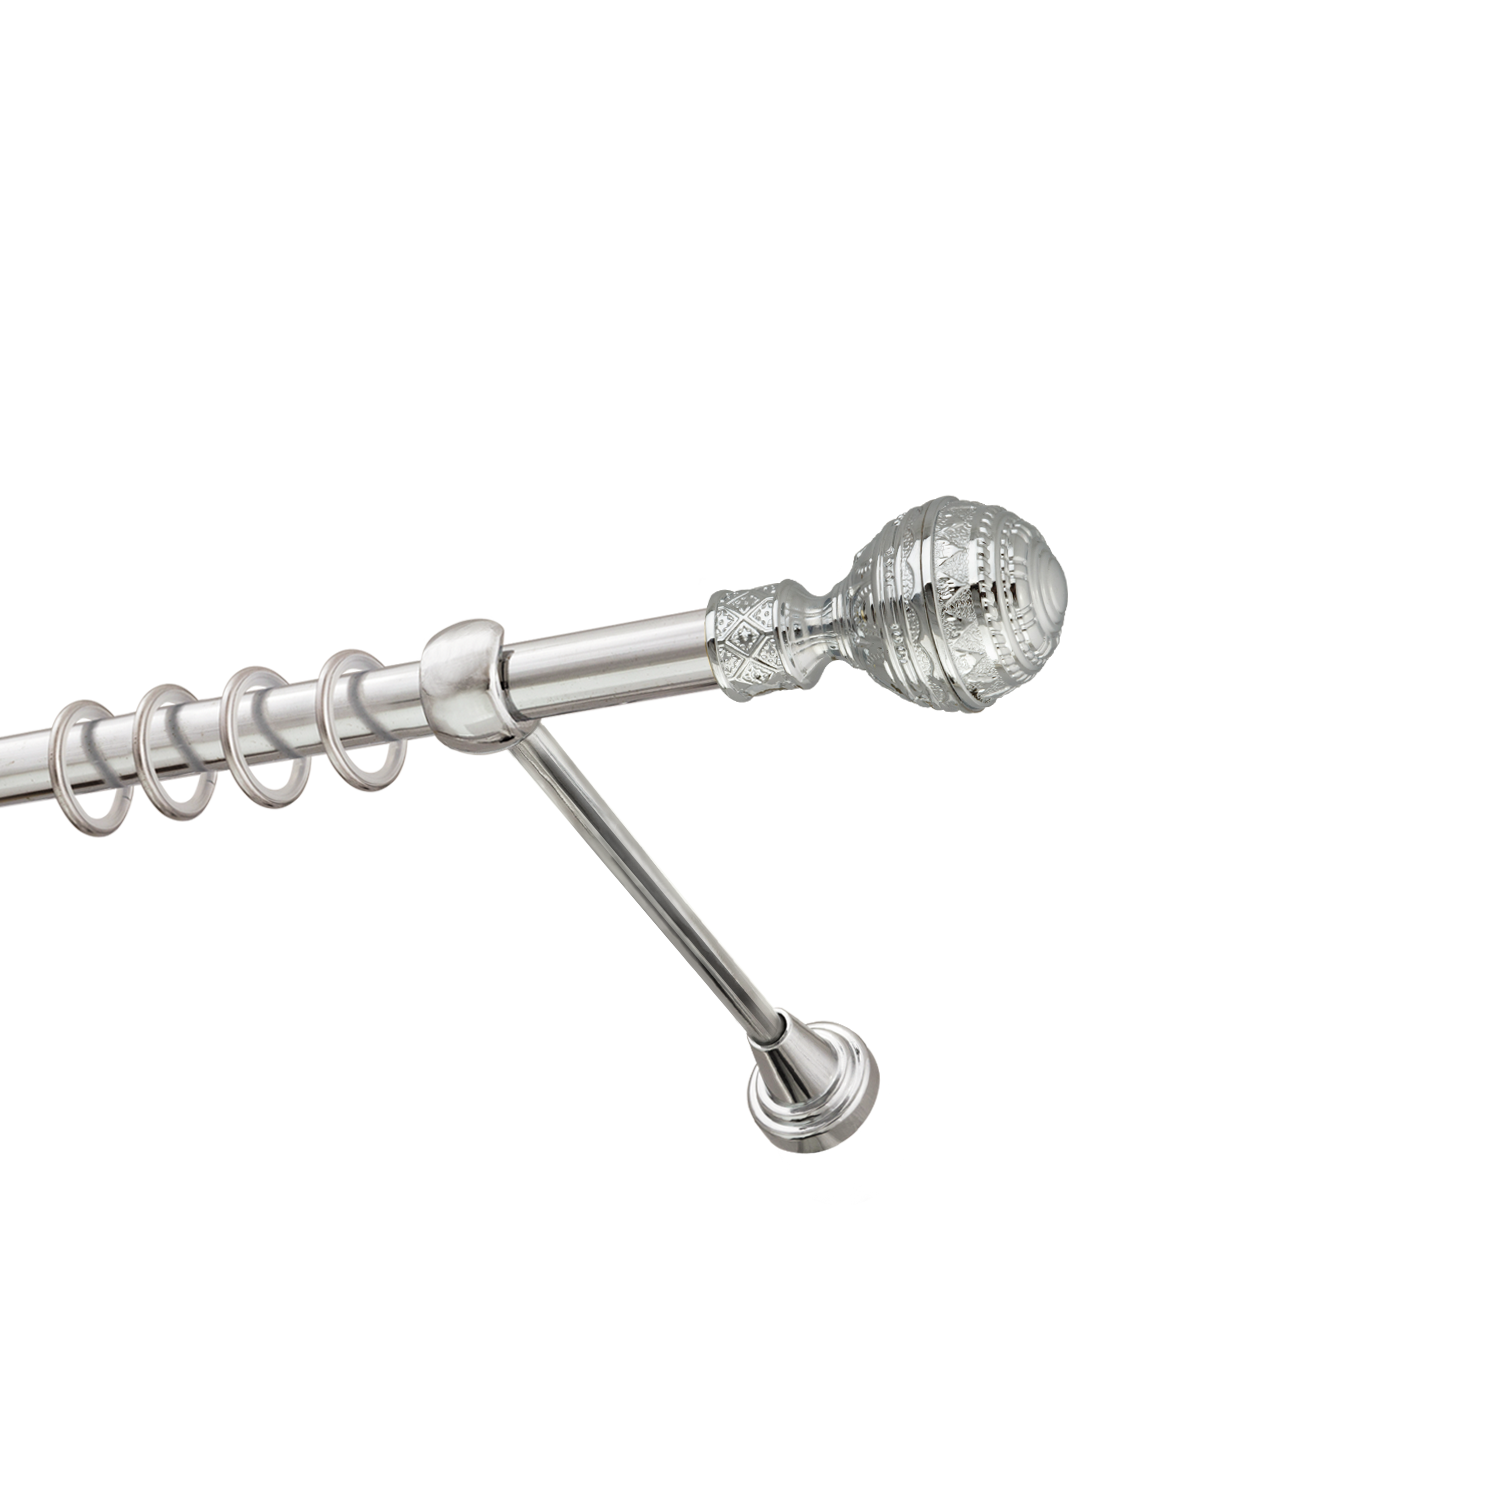 Металлический карниз для штор Роял, однорядный 16 мм, серебро, гладкая штанга, длина 240 см - фото Wikidecor.ru